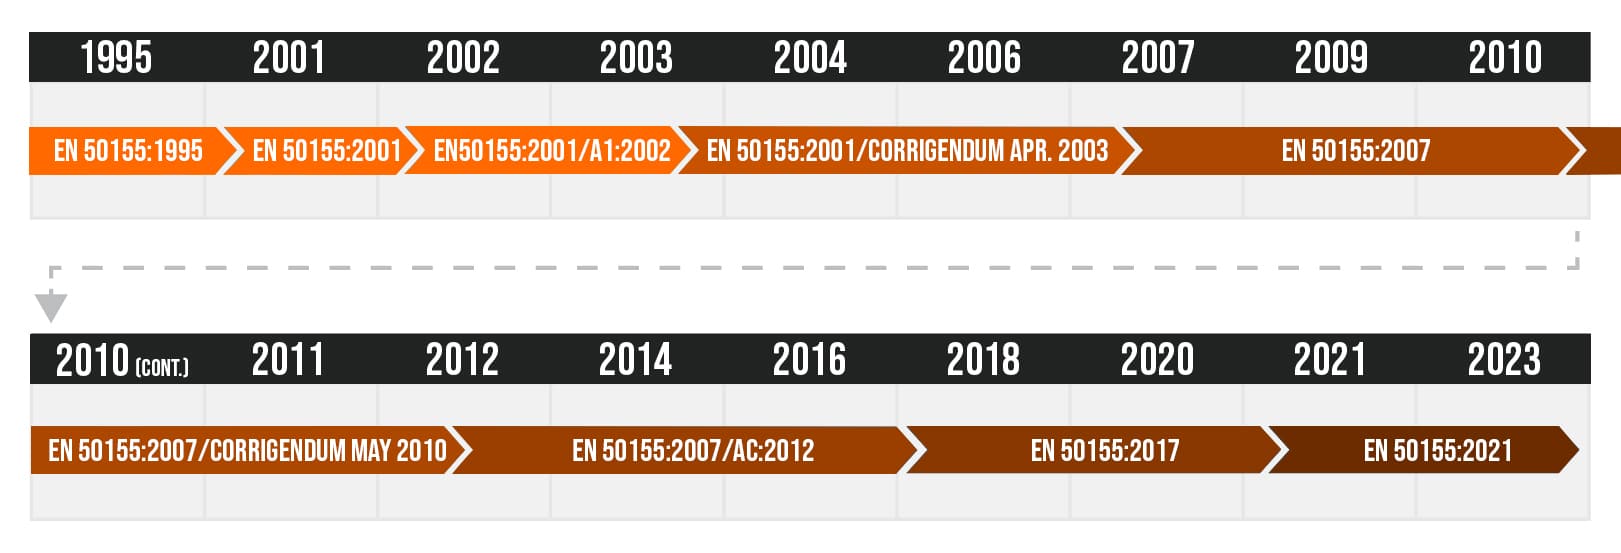 EN50155 Standard for timeline of revisions